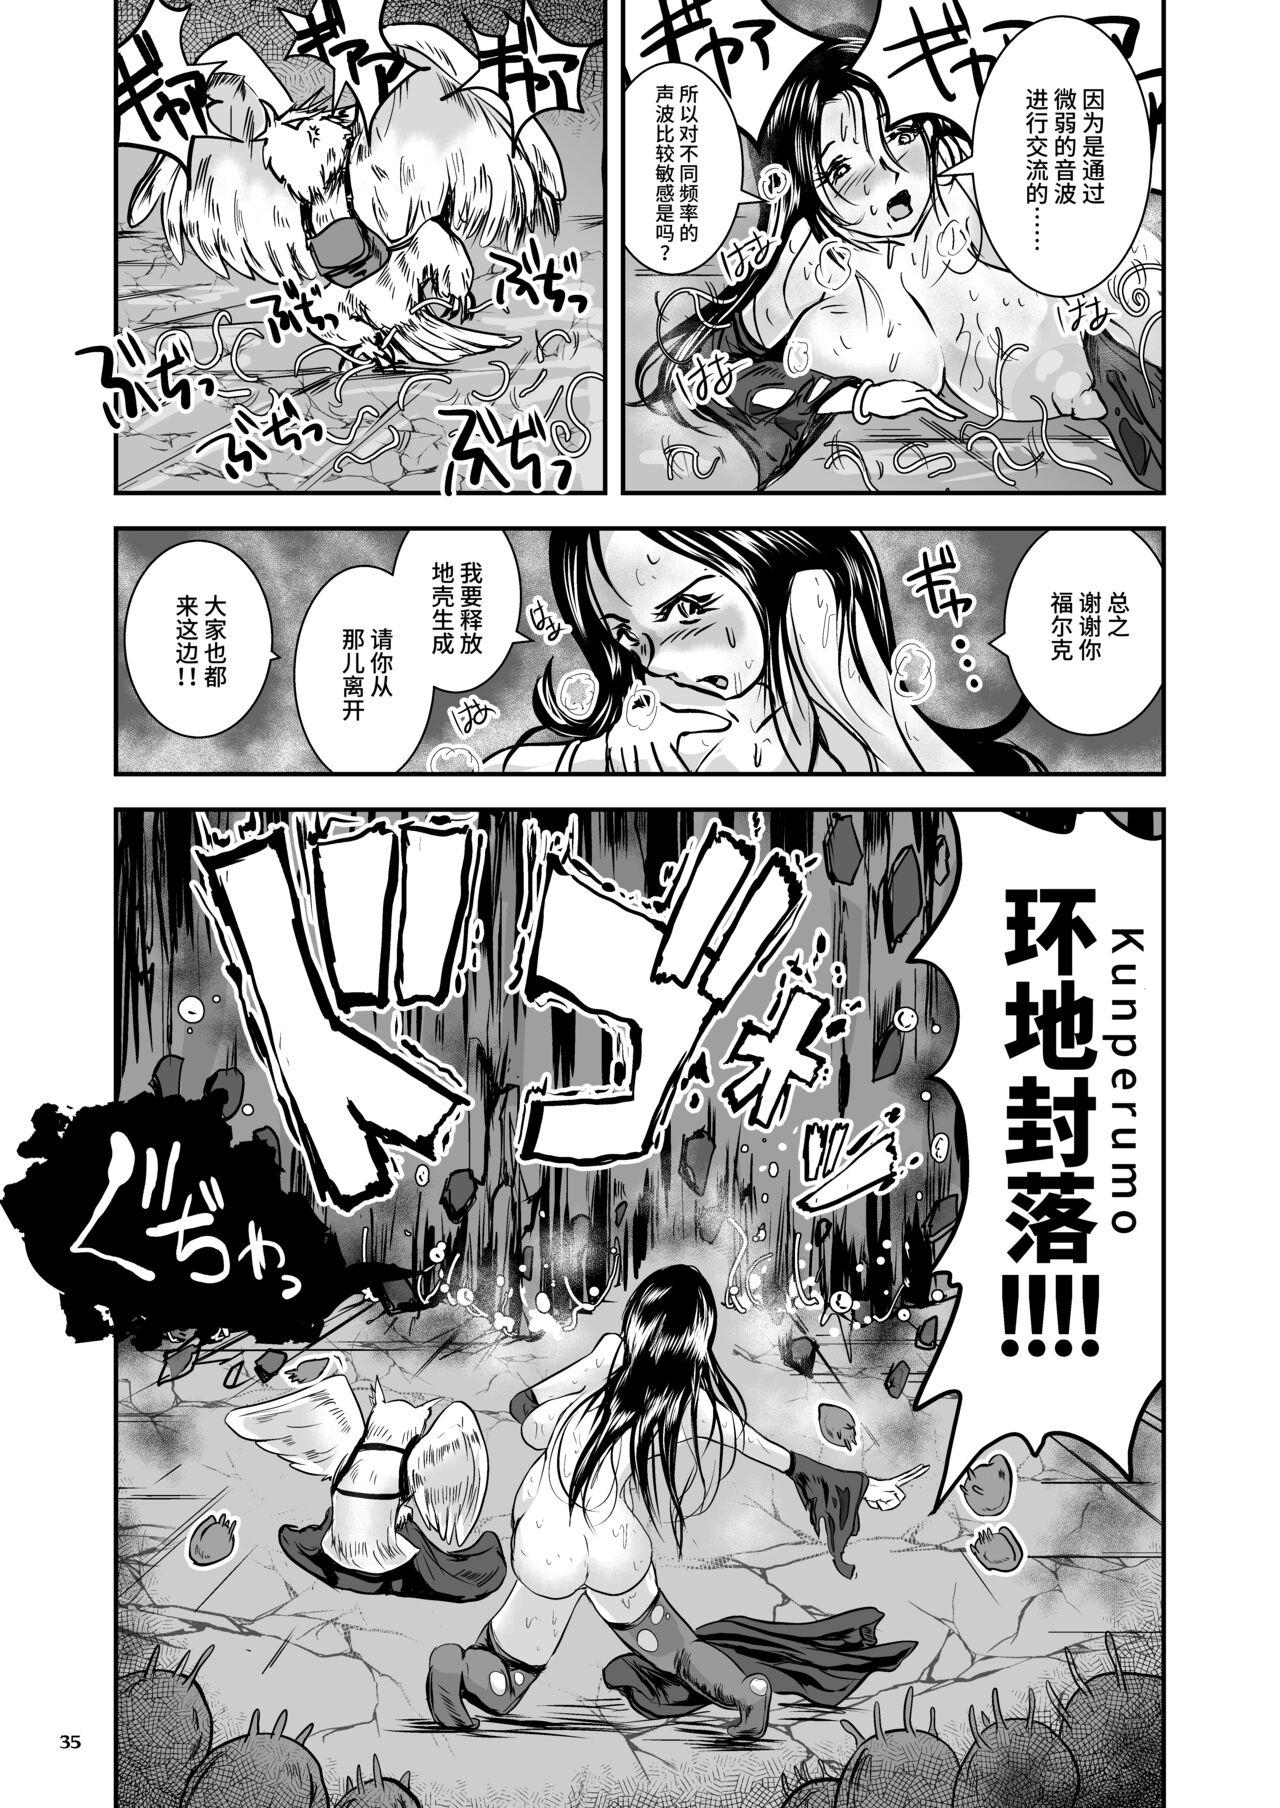 Oonamekuji to Kurokami no Mahoutsukai - Parasitized Giant Slugs V.S. Sorceress of the Black Hair as Aura 34